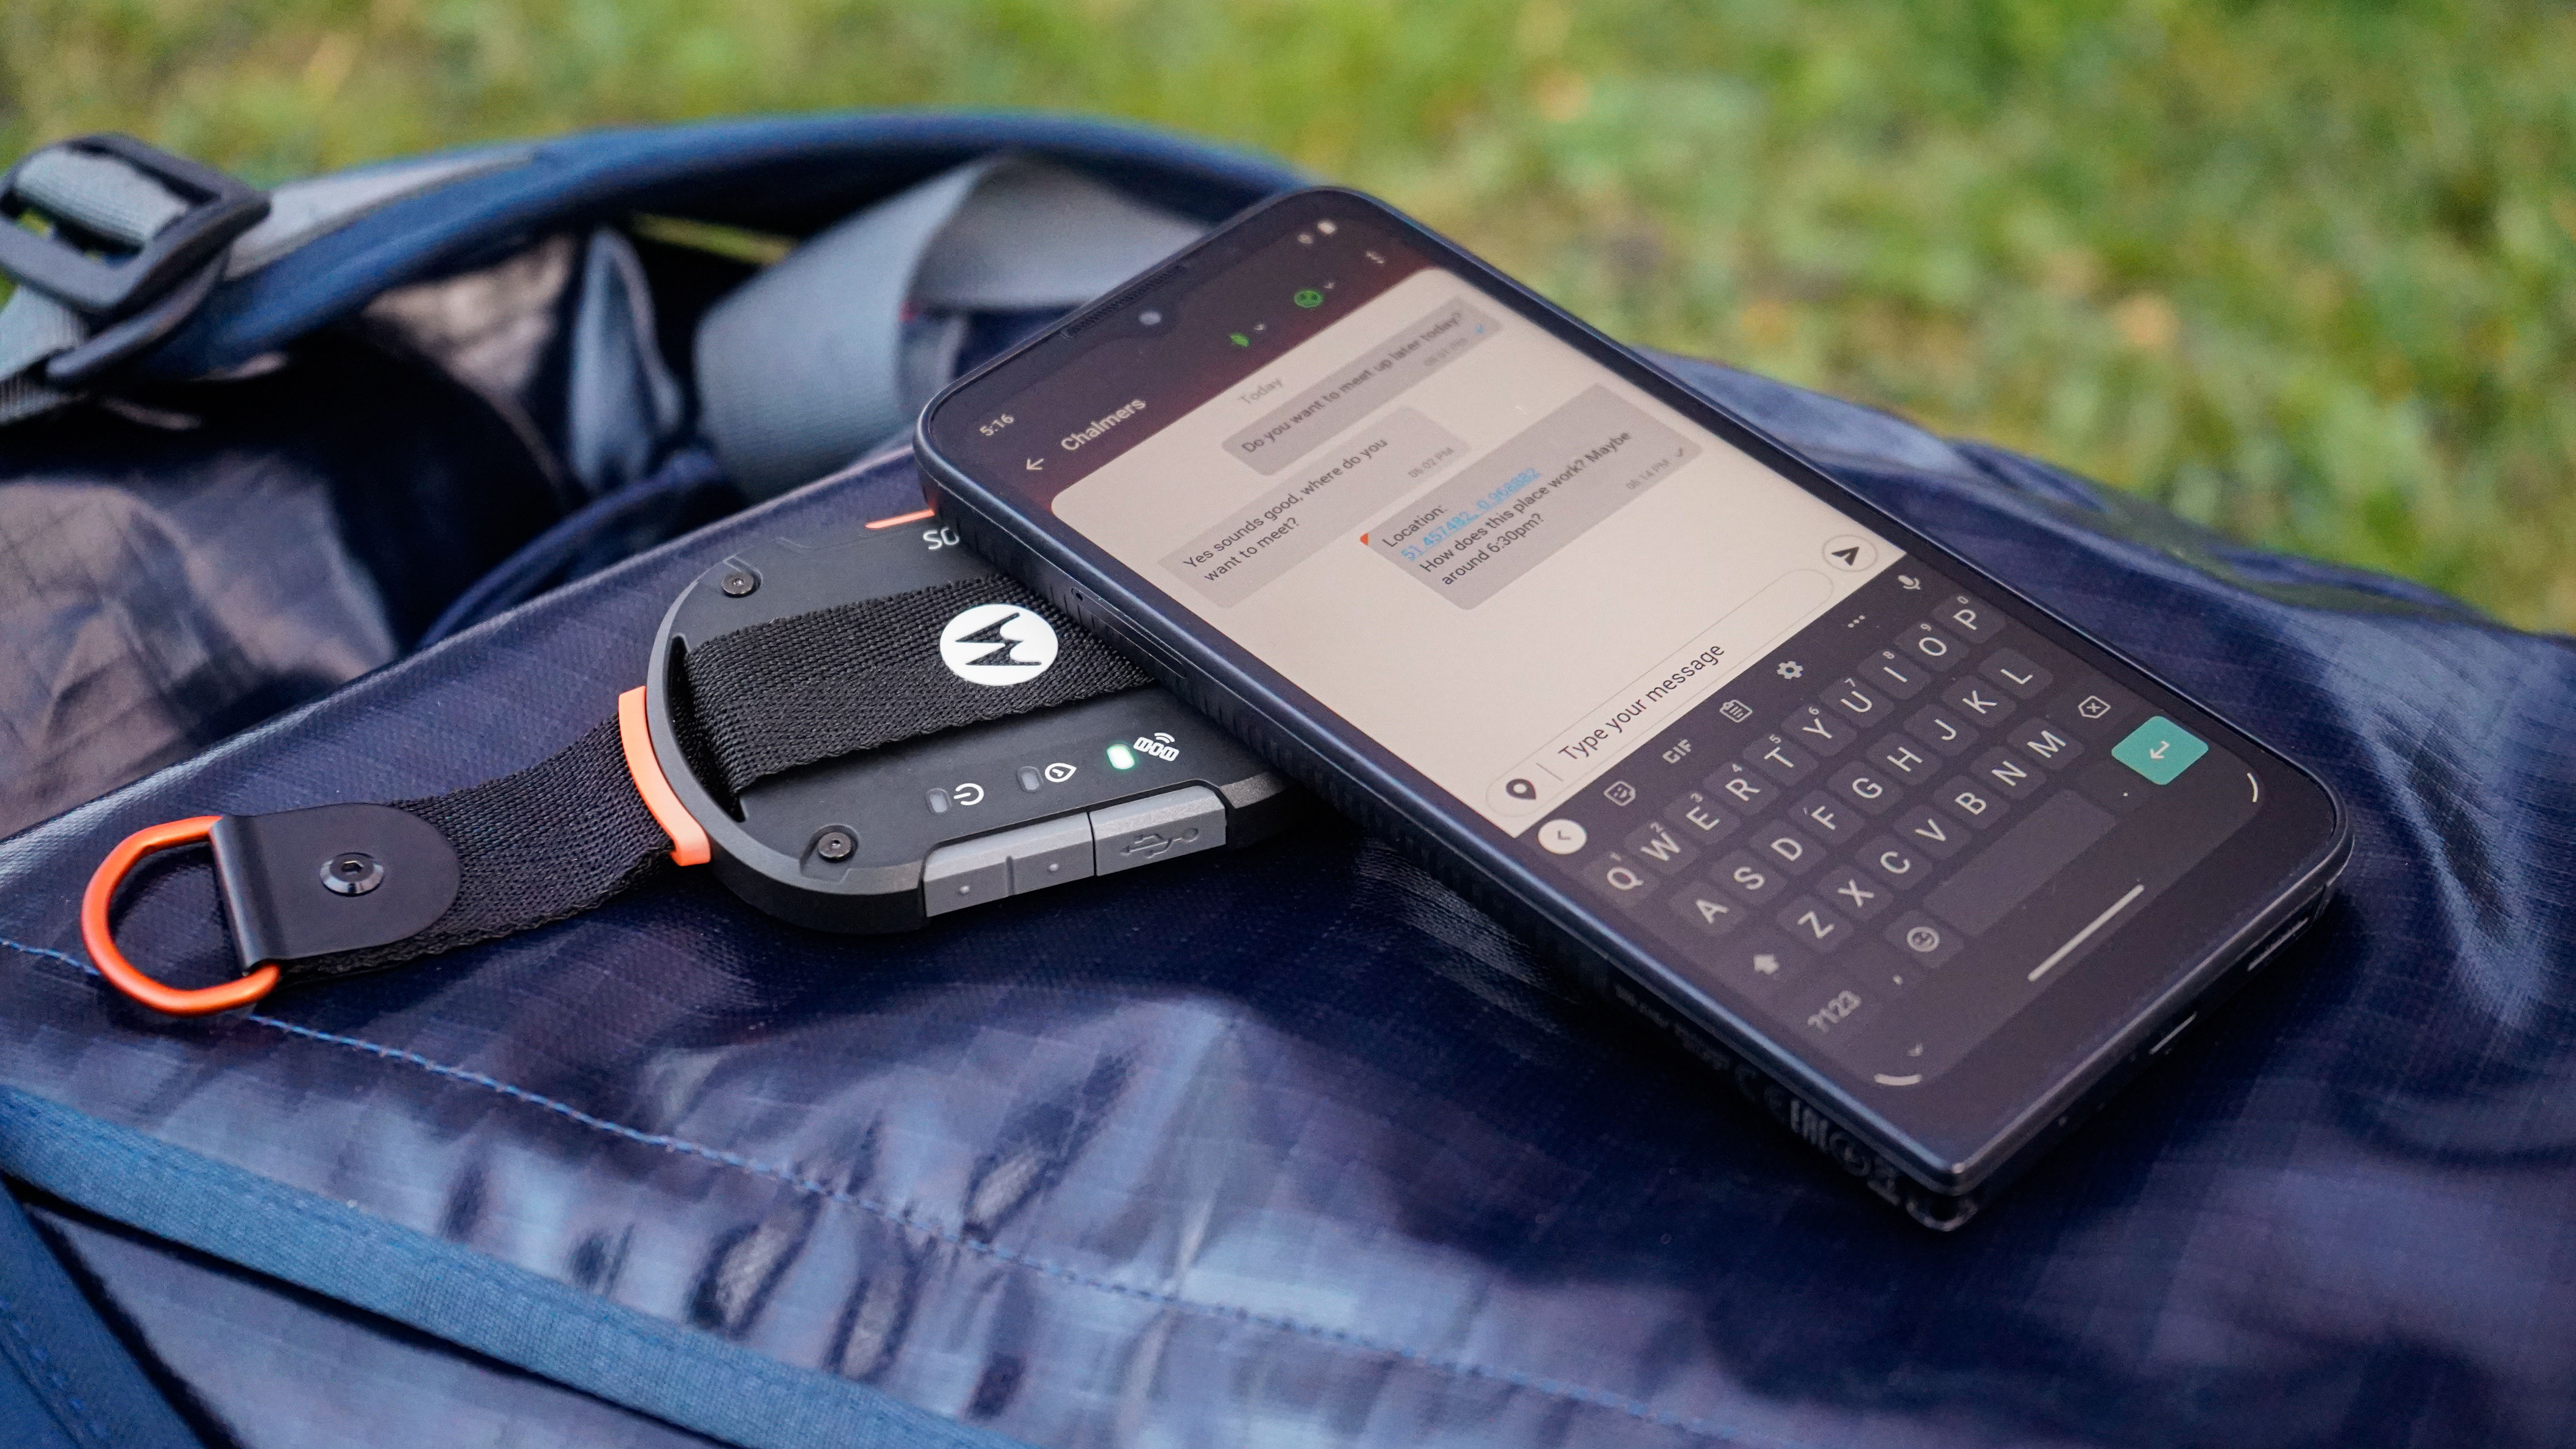 Ce nouvel appareil Bluetooth peut vous permettre d'envoyer et recevoir des SMS de partout, par satellite